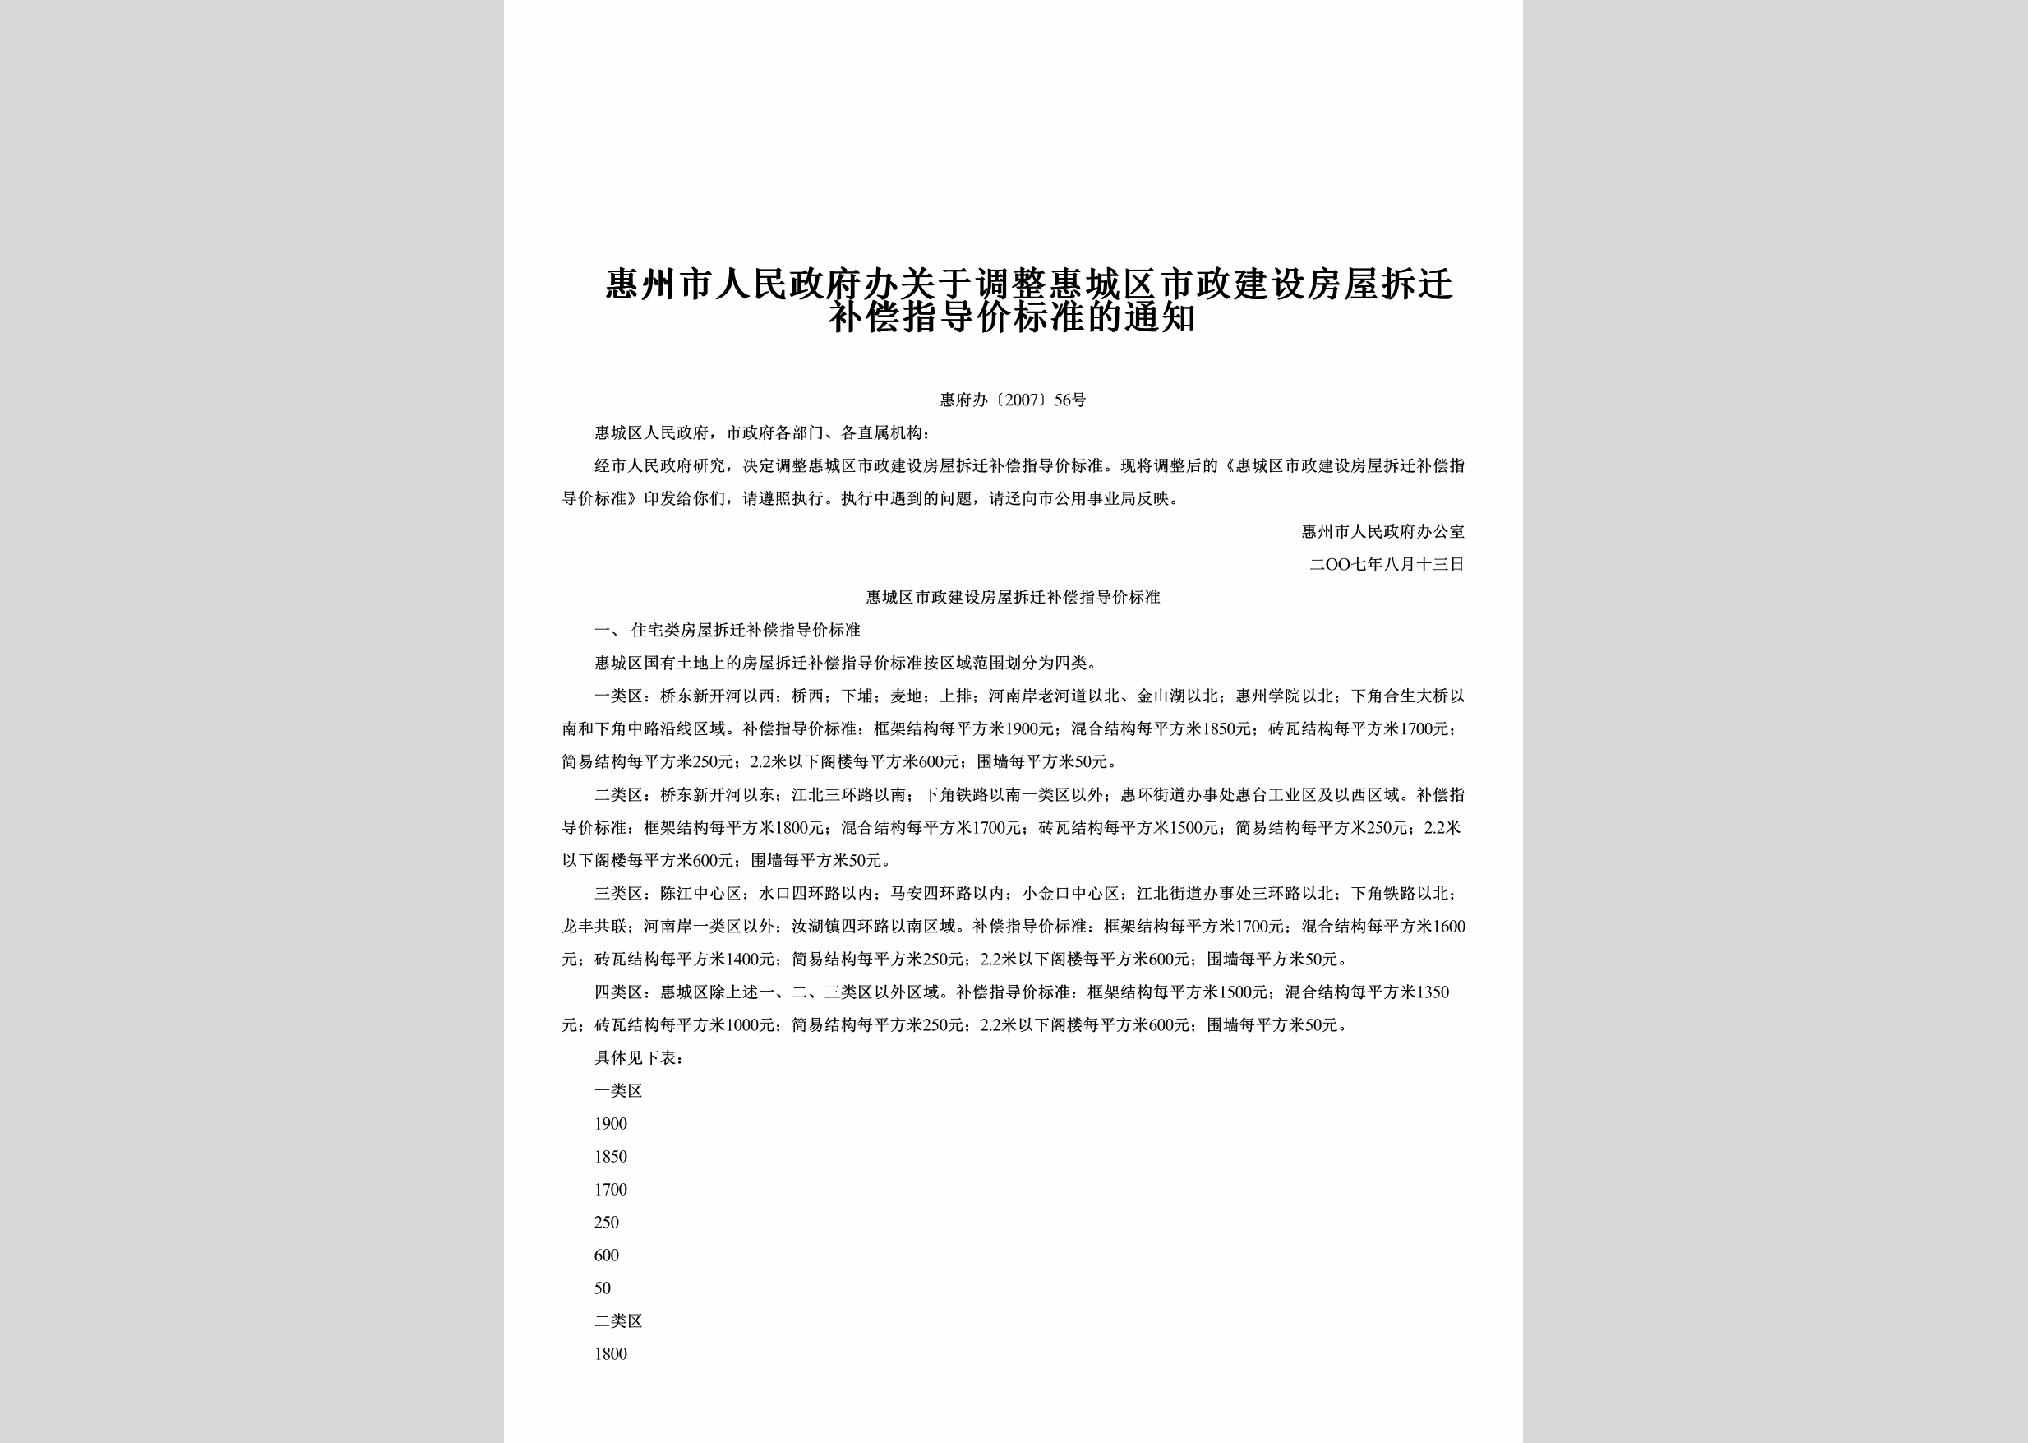 惠府办[2007]56号：关于调整惠城区市政建设房屋拆迁补偿指导价标准的通知